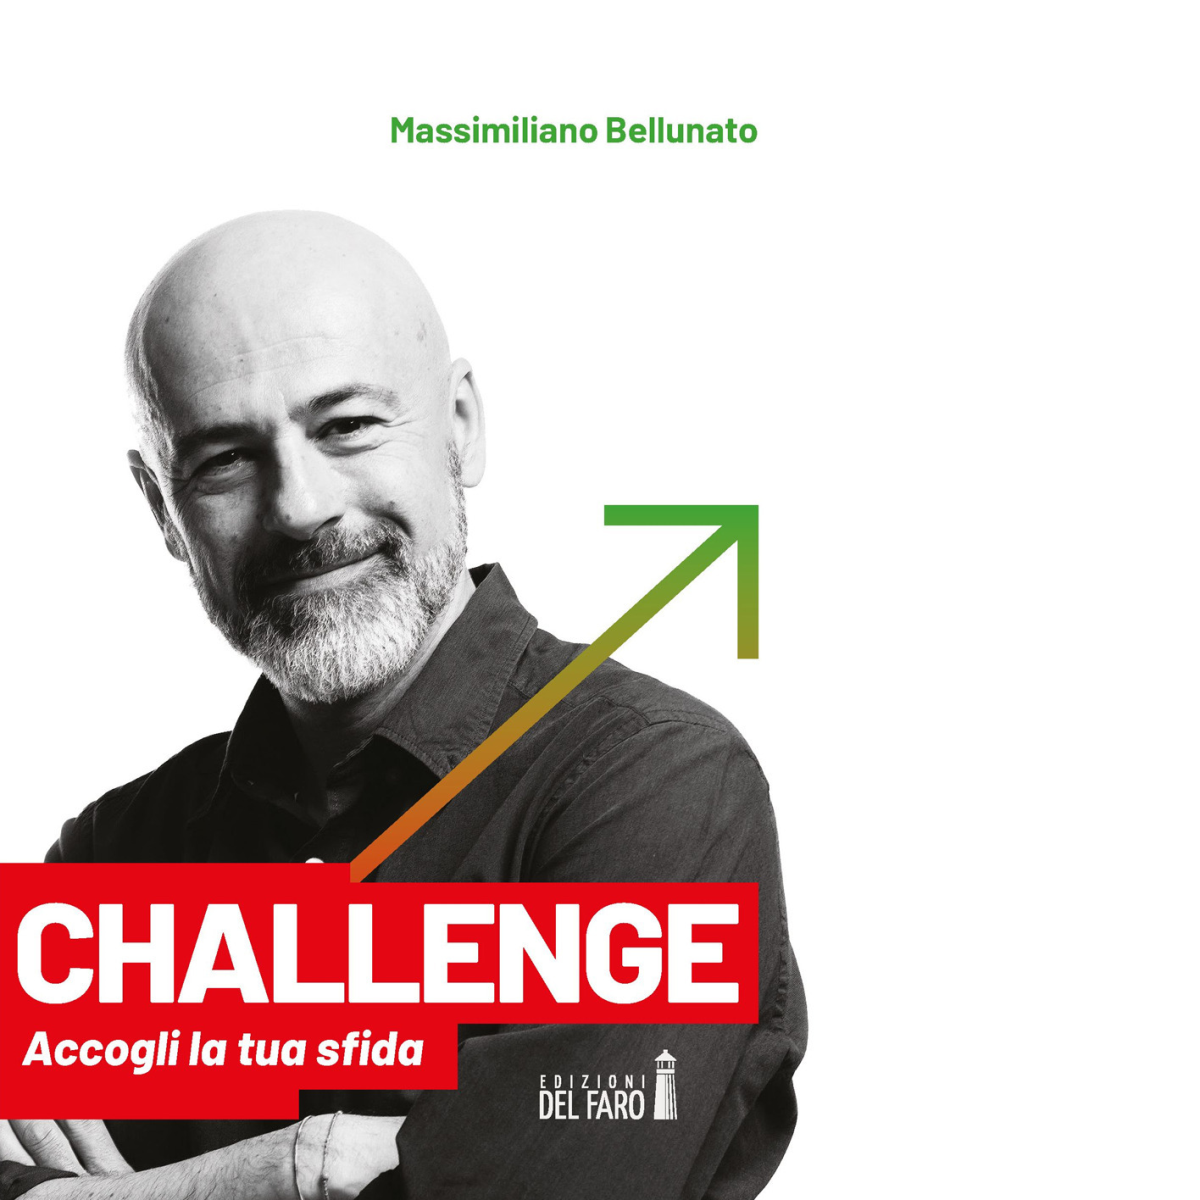 CHALLENGE. ACCOGLI LA TUA SFIDA di Bellunato Massimiliano - Del Faro, 2021